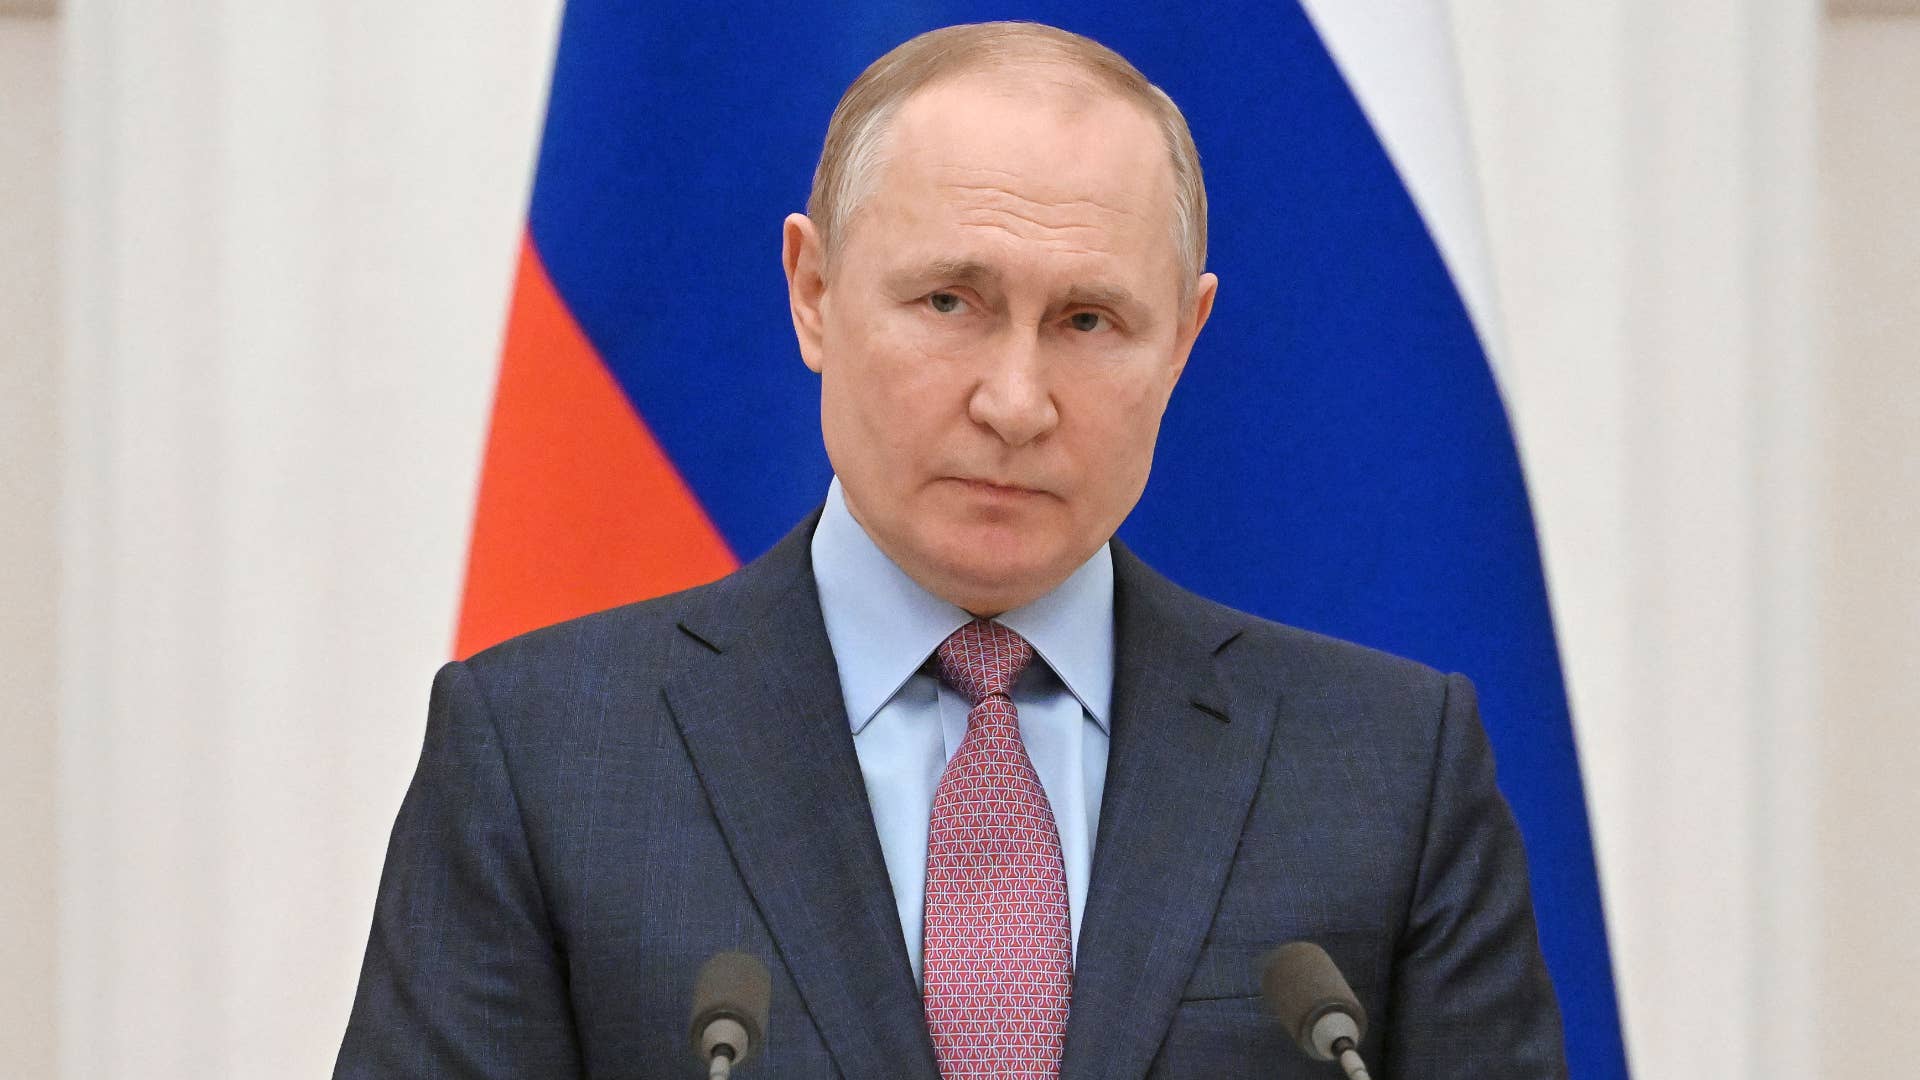 Vladimir Putin is pictured at a podium